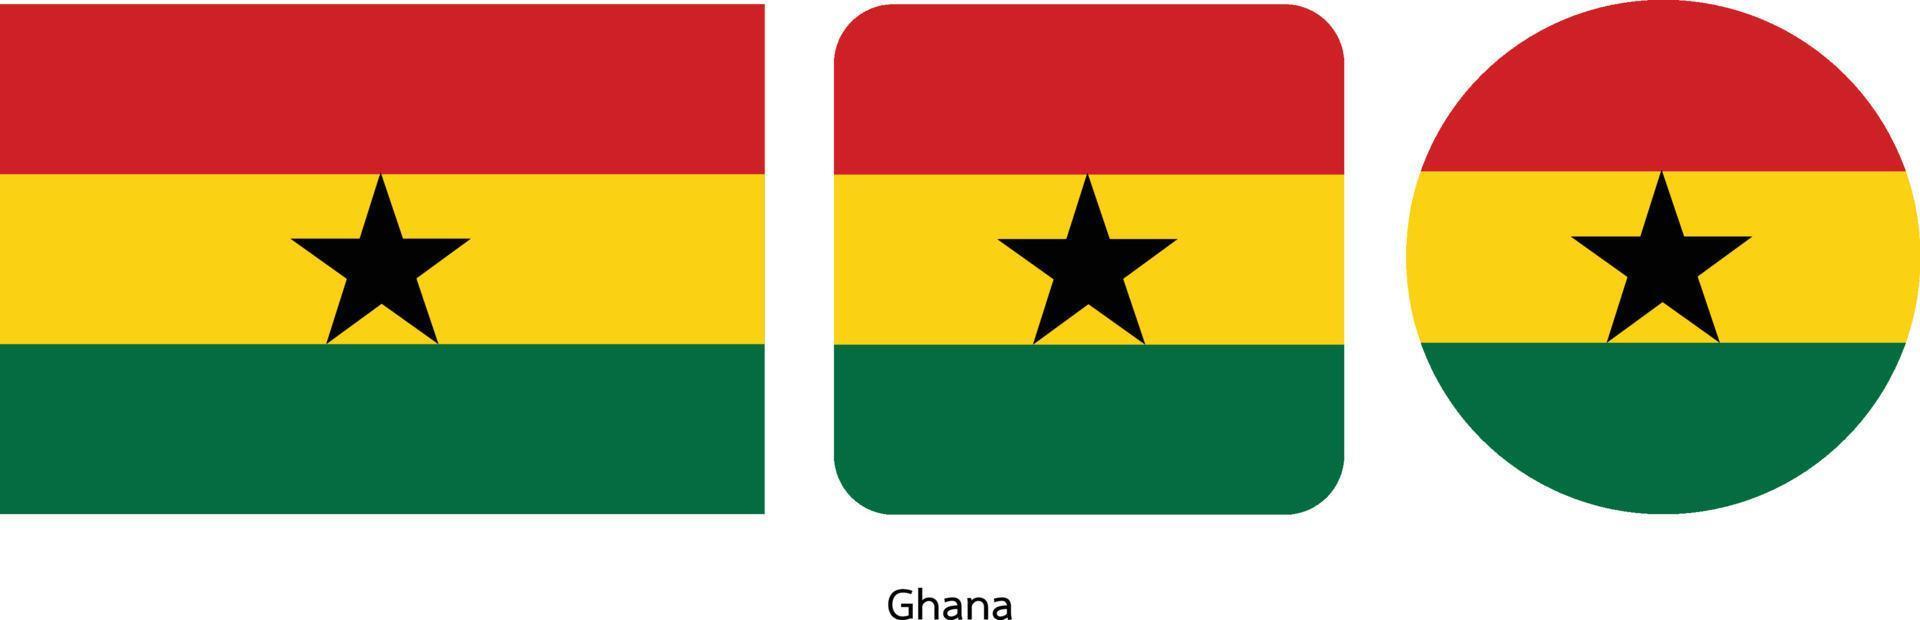 Ghana-Flagge, Vektorillustration vektor